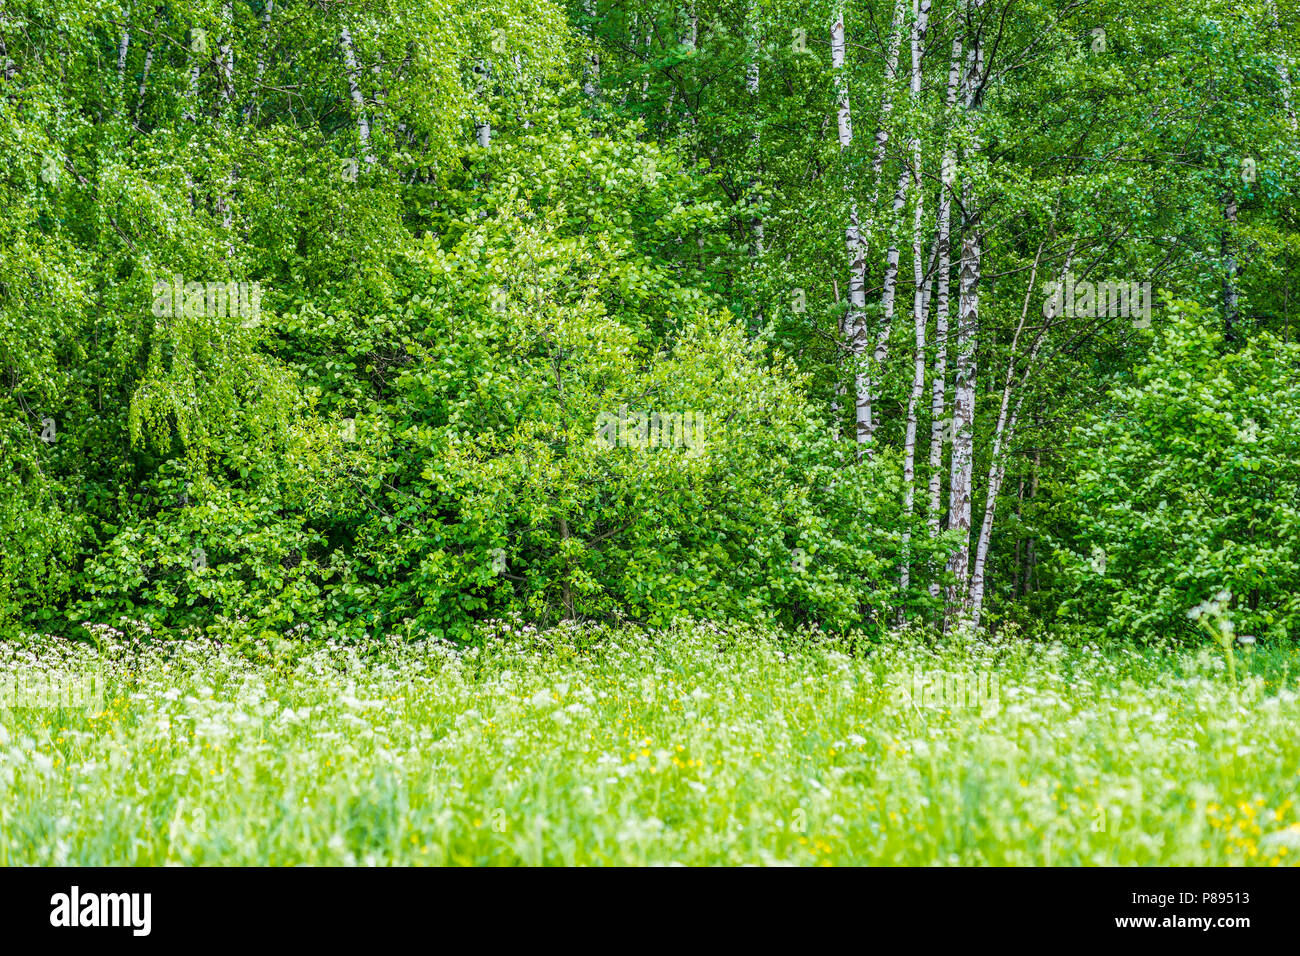 Frische grüne Gras auf einer wilden Wiese, Sträucher Haselnuss, Birke Bäume an einem sonnigen Tag zu Beginn der Sommersaison. Stockfoto